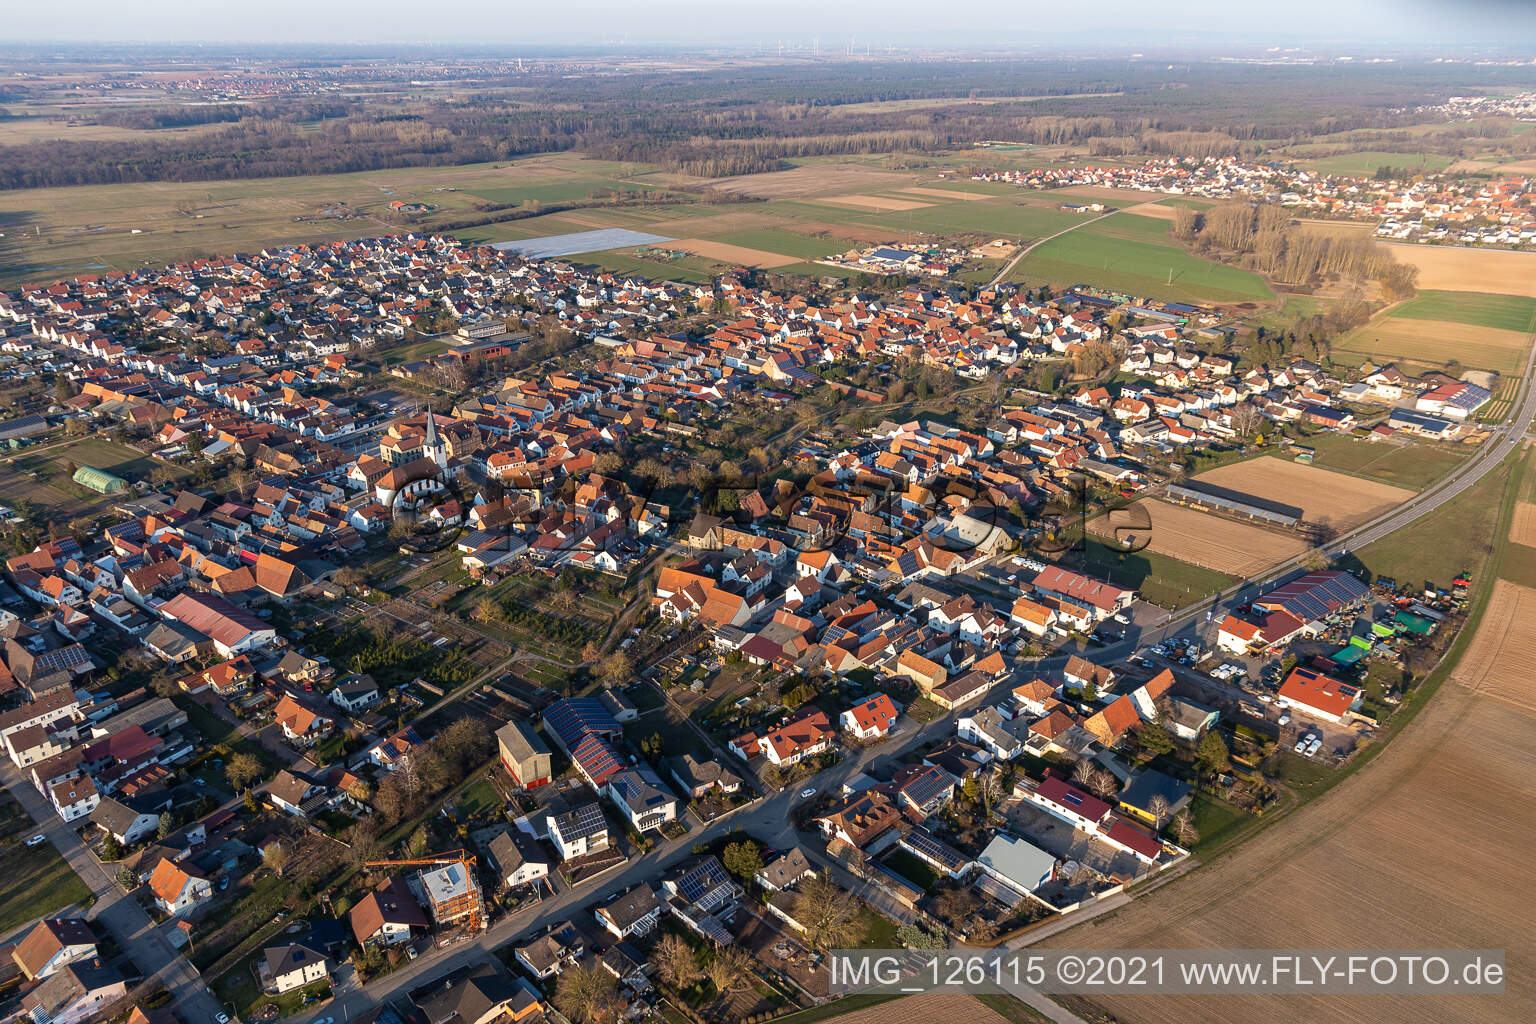 Ottersheim bei Landau im Bundesland Rheinland-Pfalz, Deutschland von der Drohne aus gesehen